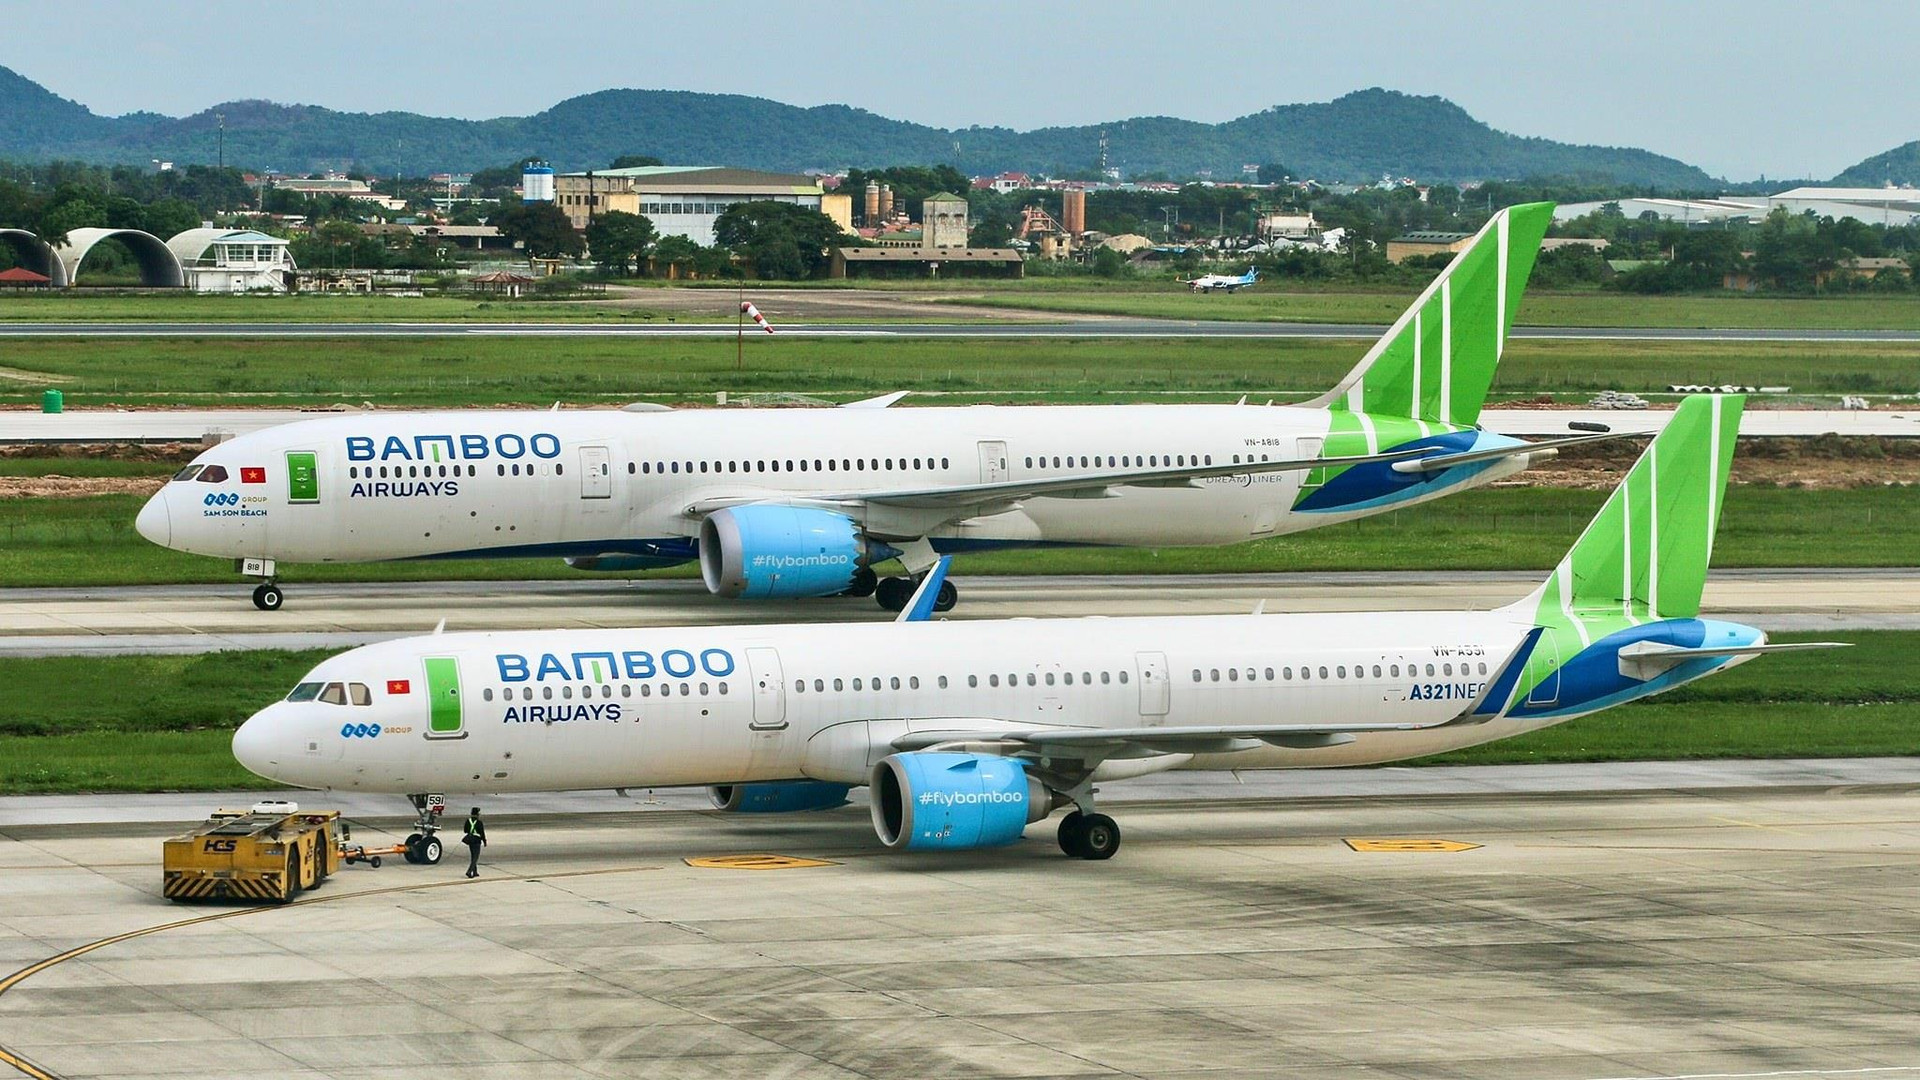 Cục thuế Bình Định cảm ơn Bamboo Airways vì nộp thuế vượt quá mong đợi, doanh thu hãng bay đạt trên 13.000 tỷ